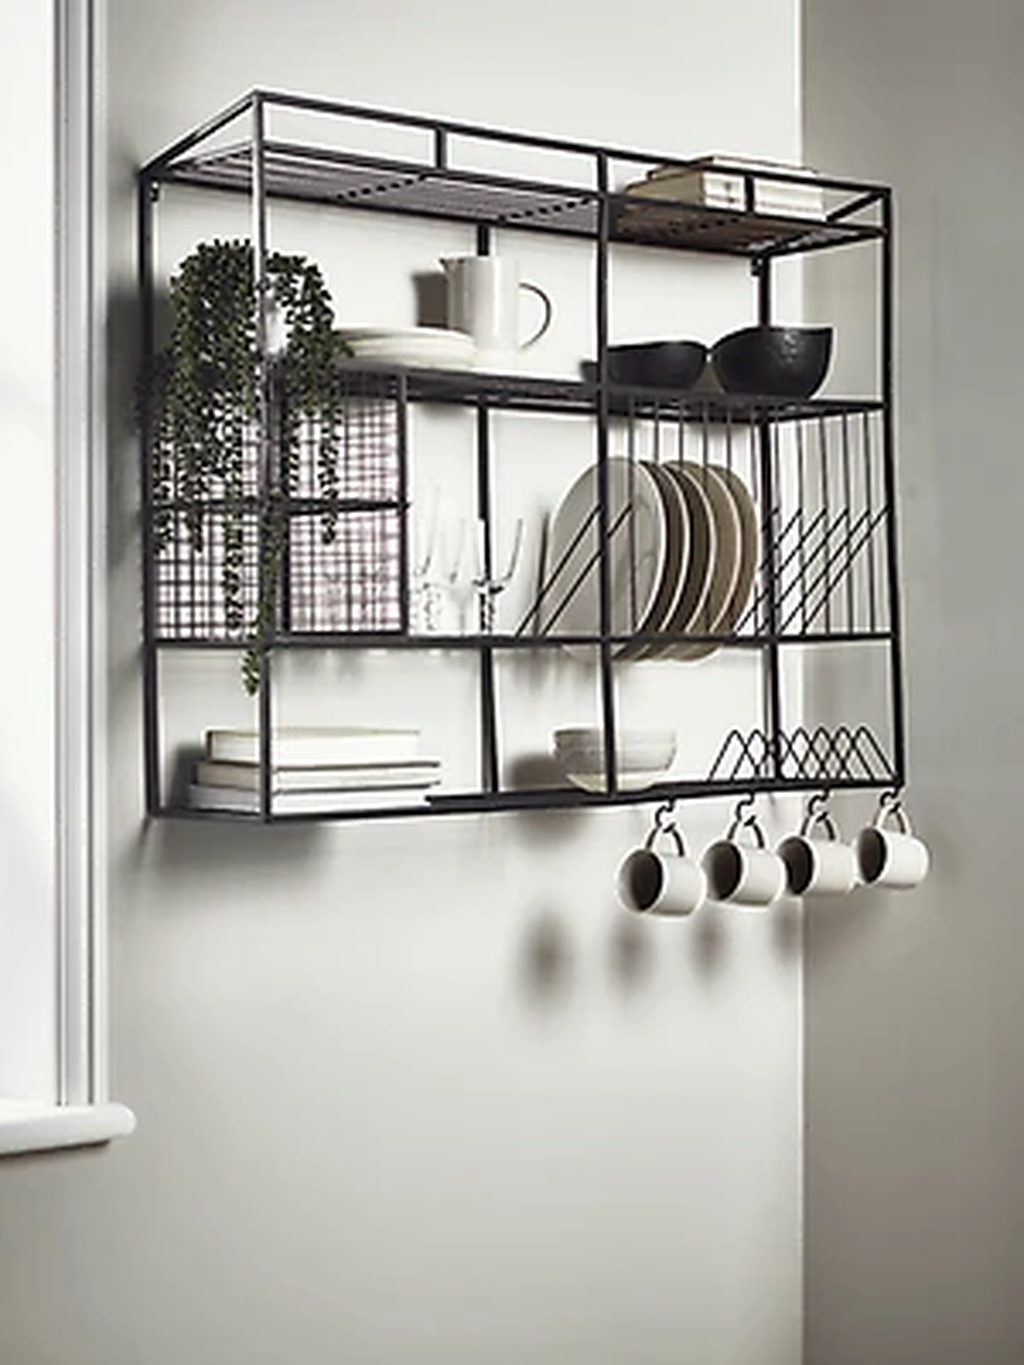 Wonderful Industrial Kitchen Shelf Design Ideas To Organize Your Kitchen21